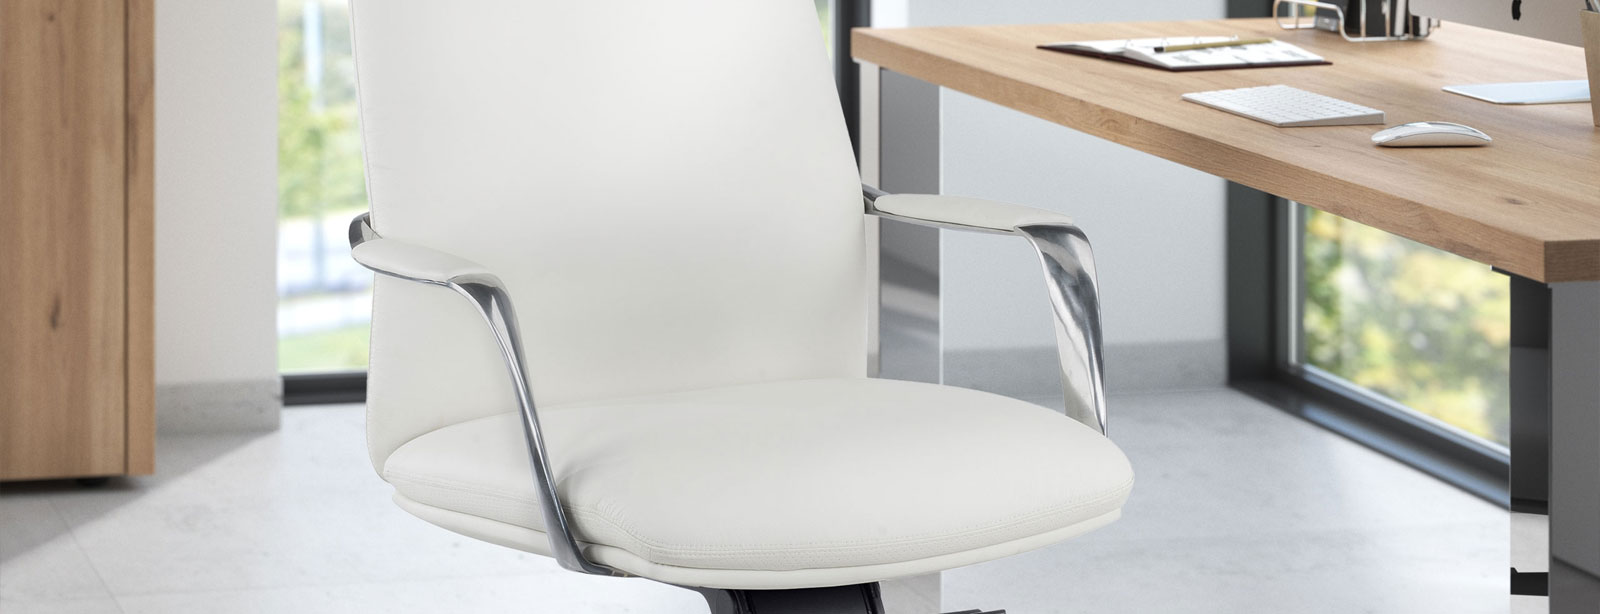 ¿Vale la pena comprar sillas de piel blanca para la oficina?